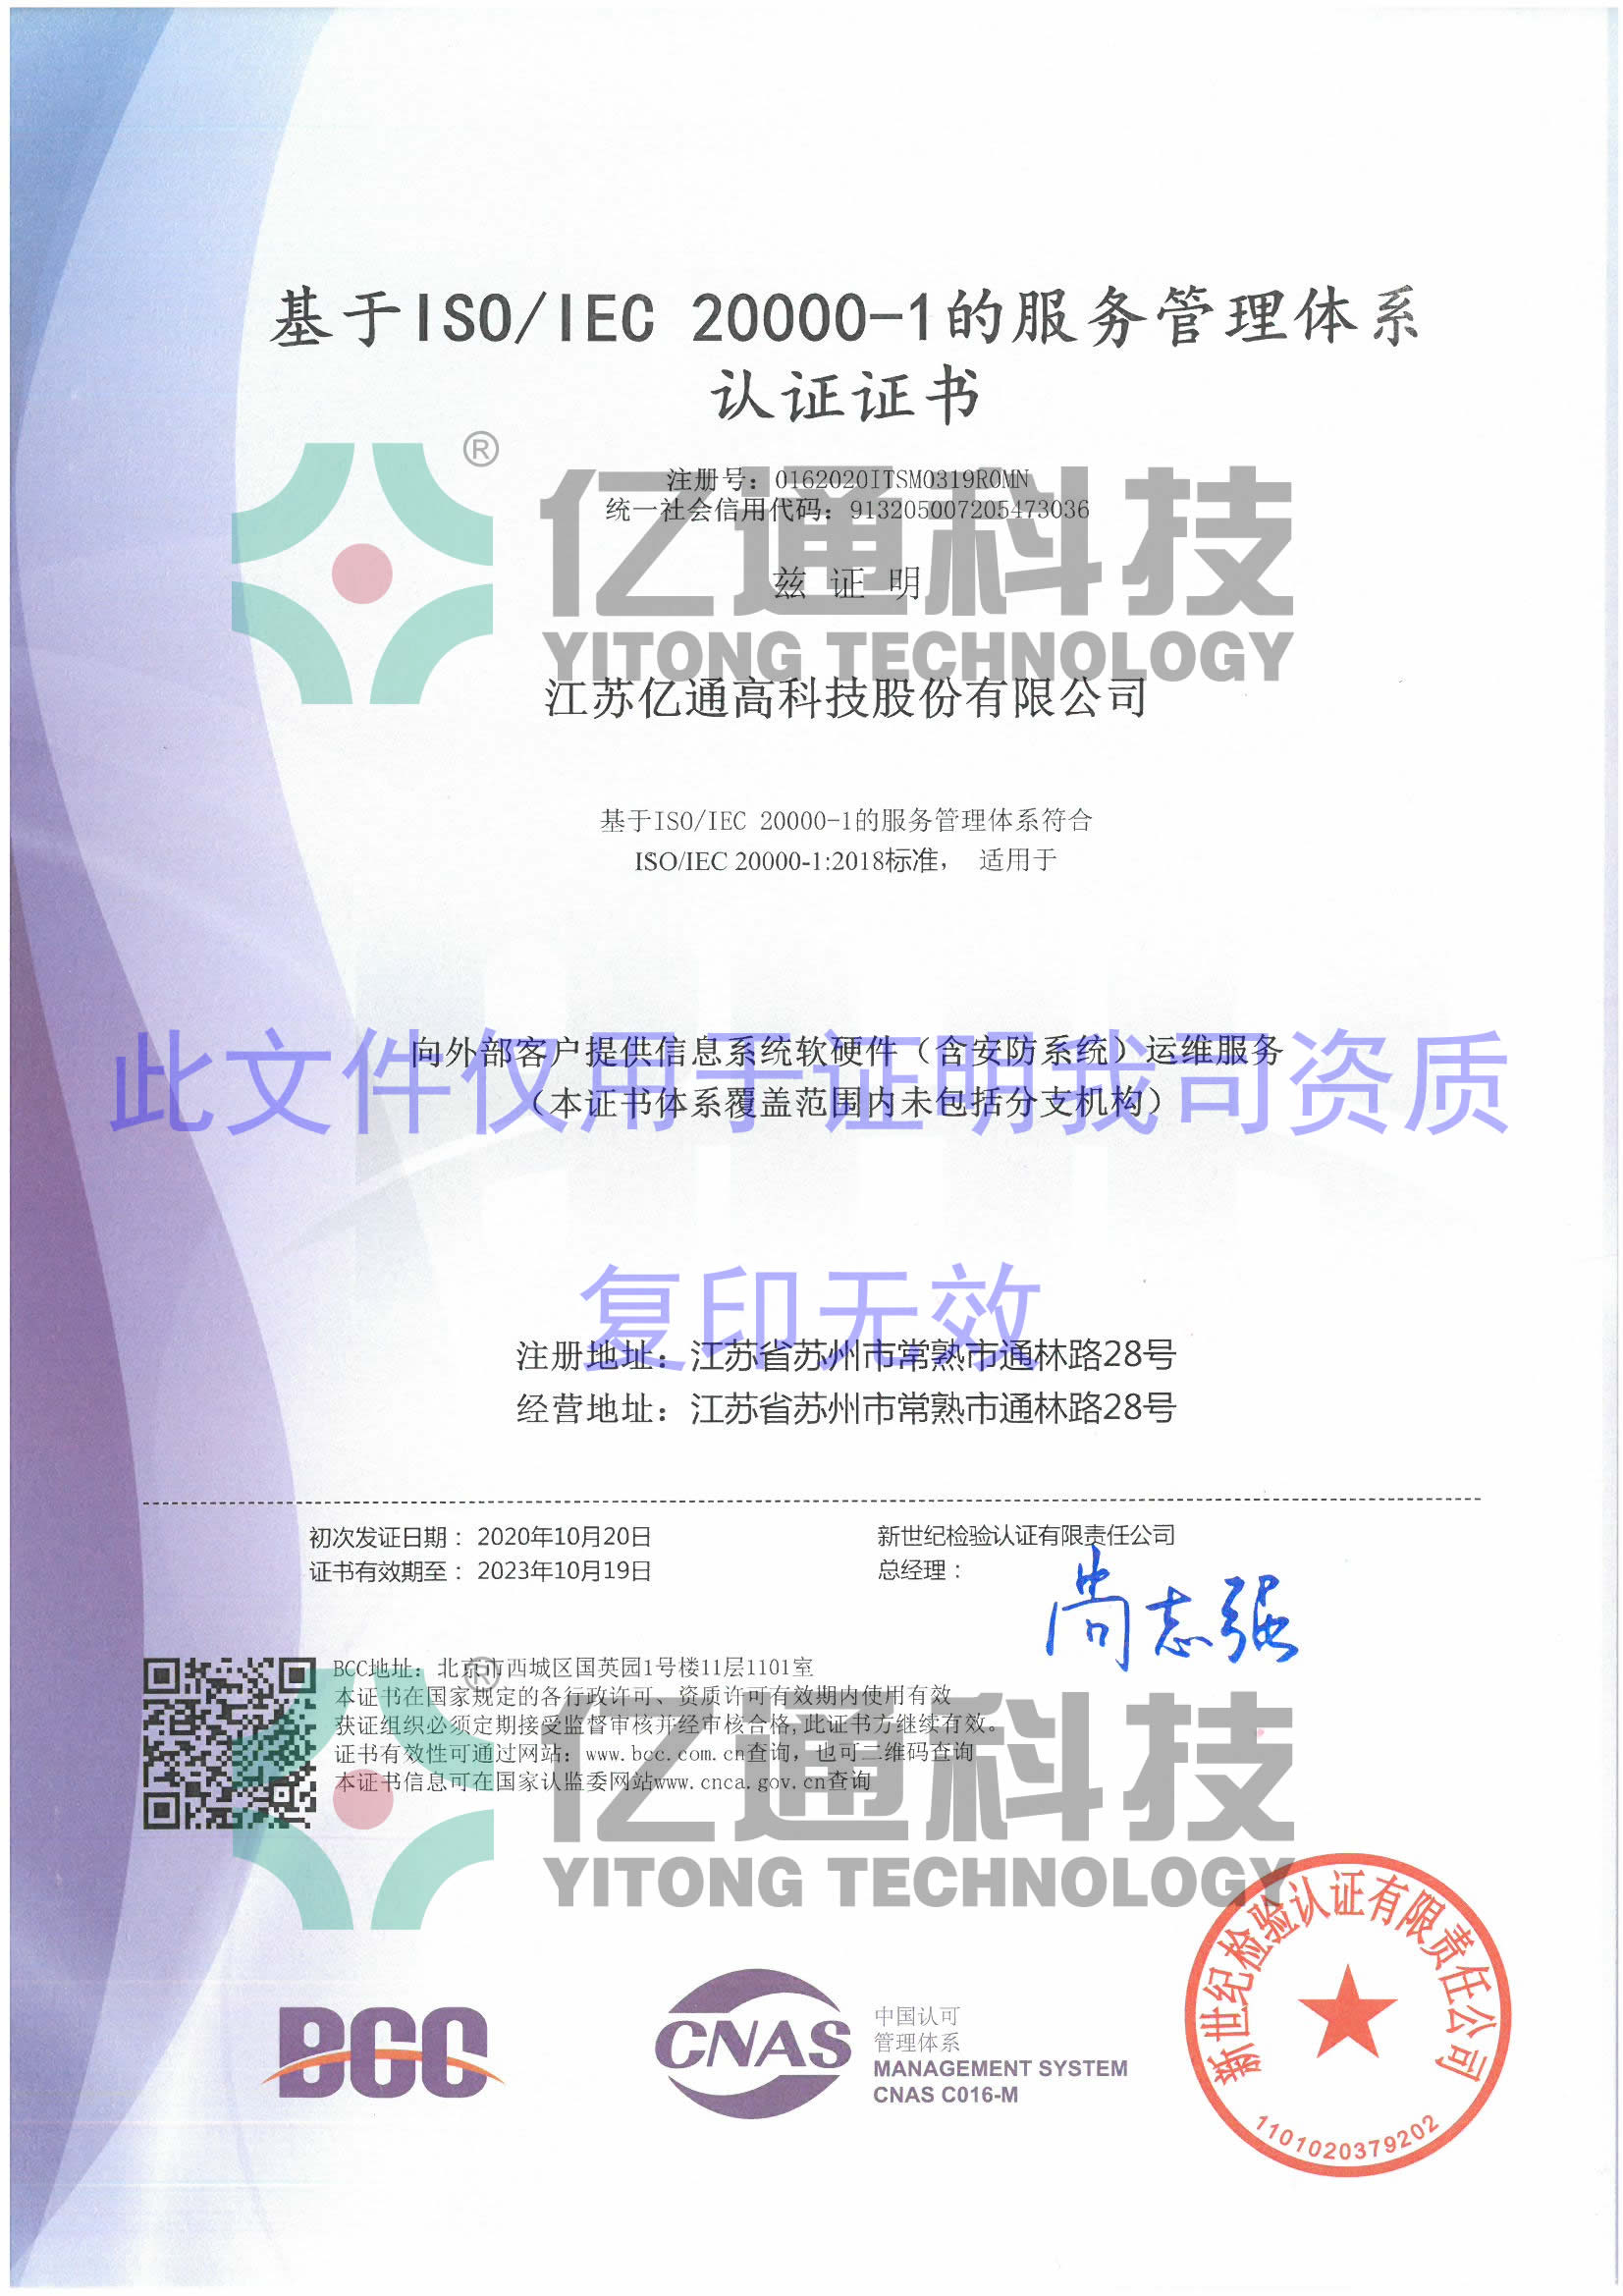 信息技术服务管理体系认证证书ISO20000